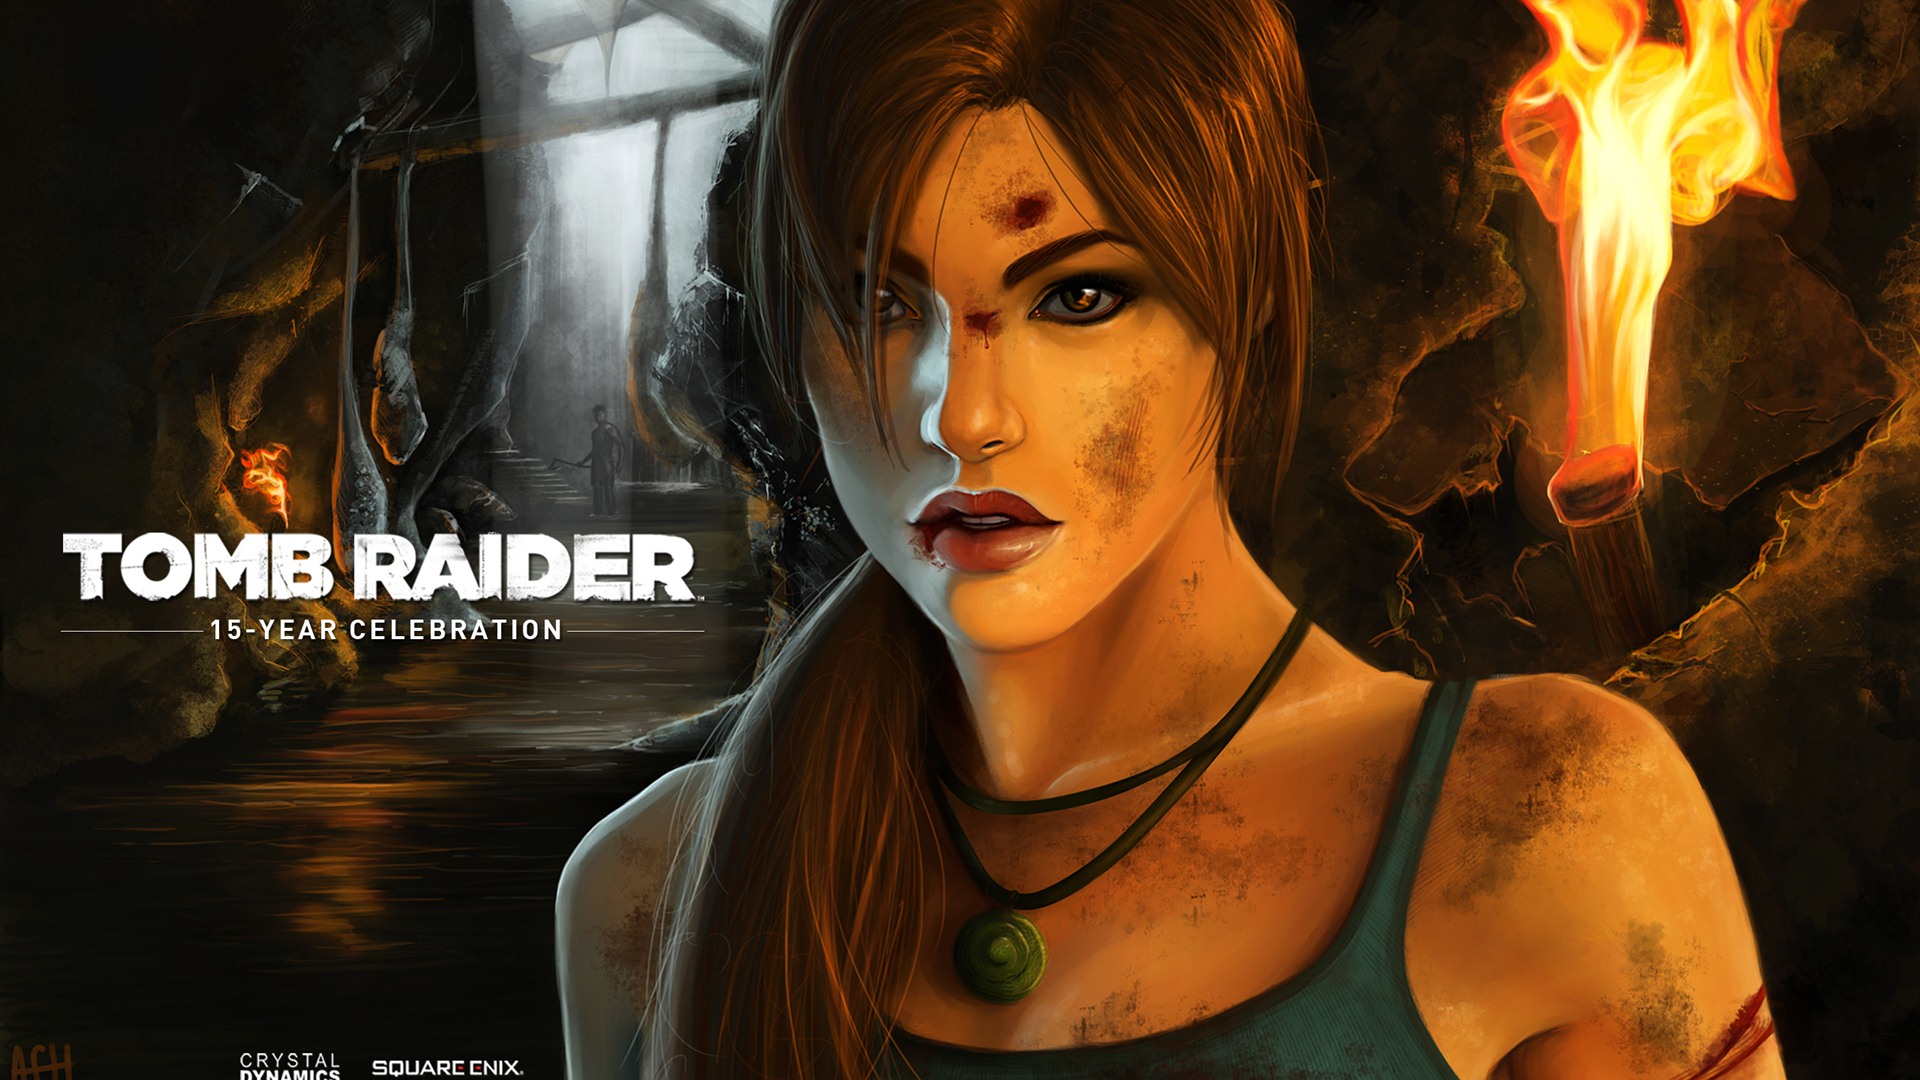 Tomb Raider 15-Year Celebration 古墓丽影15周年纪念版 高清壁纸7 - 1920x1080